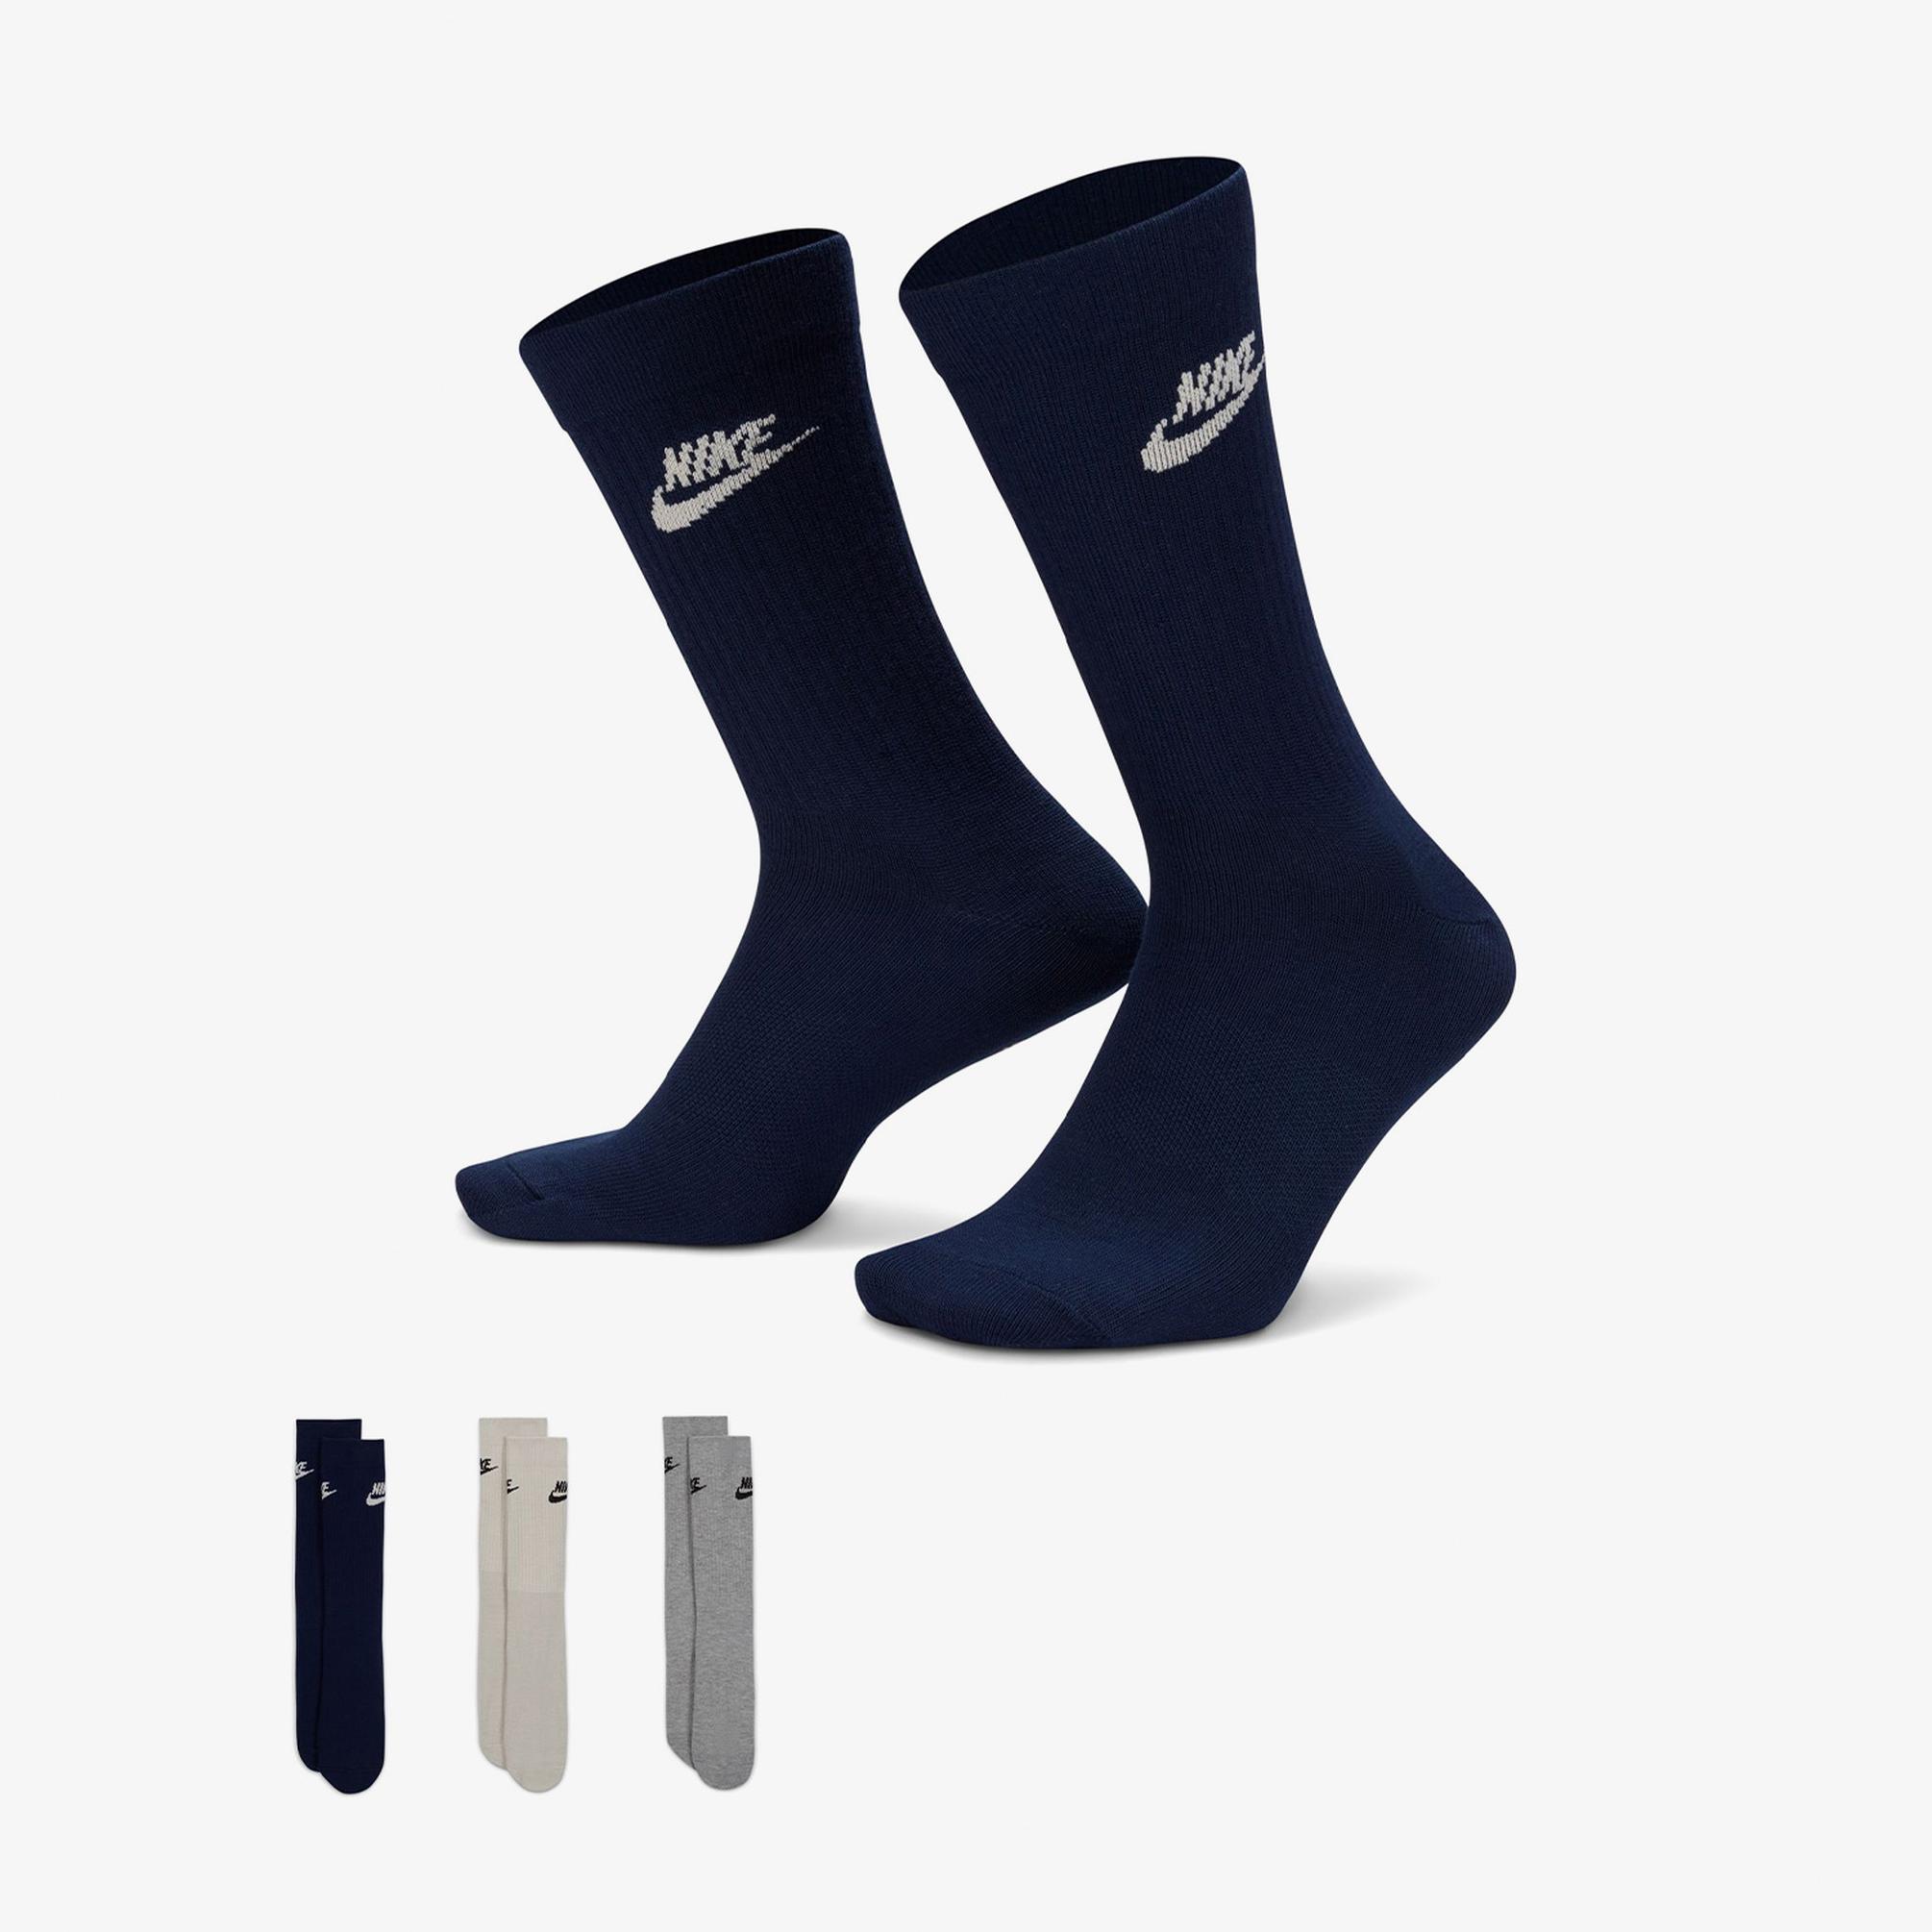  Nike Sportswear Everyday Essential Crew Unisex Lacivert/Beyaz/Gri 3'lü Çorap